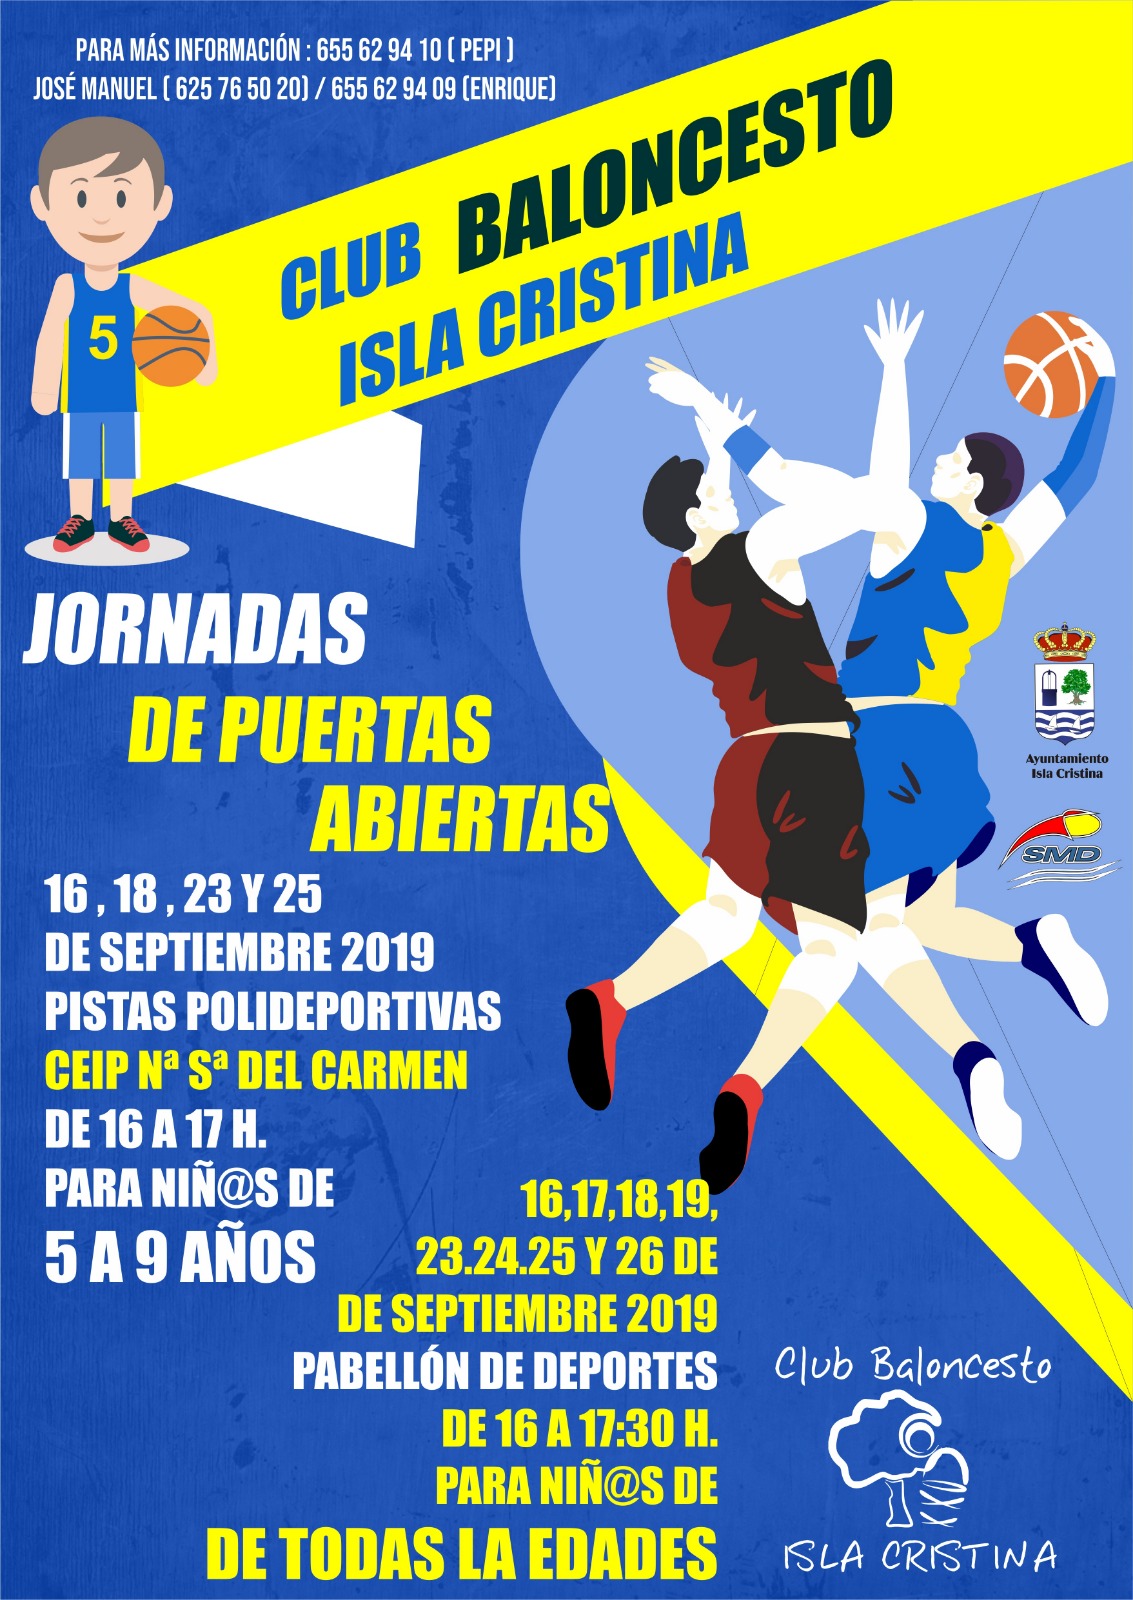 Jornadas de Puertas abiertas del Club Baloncesto Isla Cristina